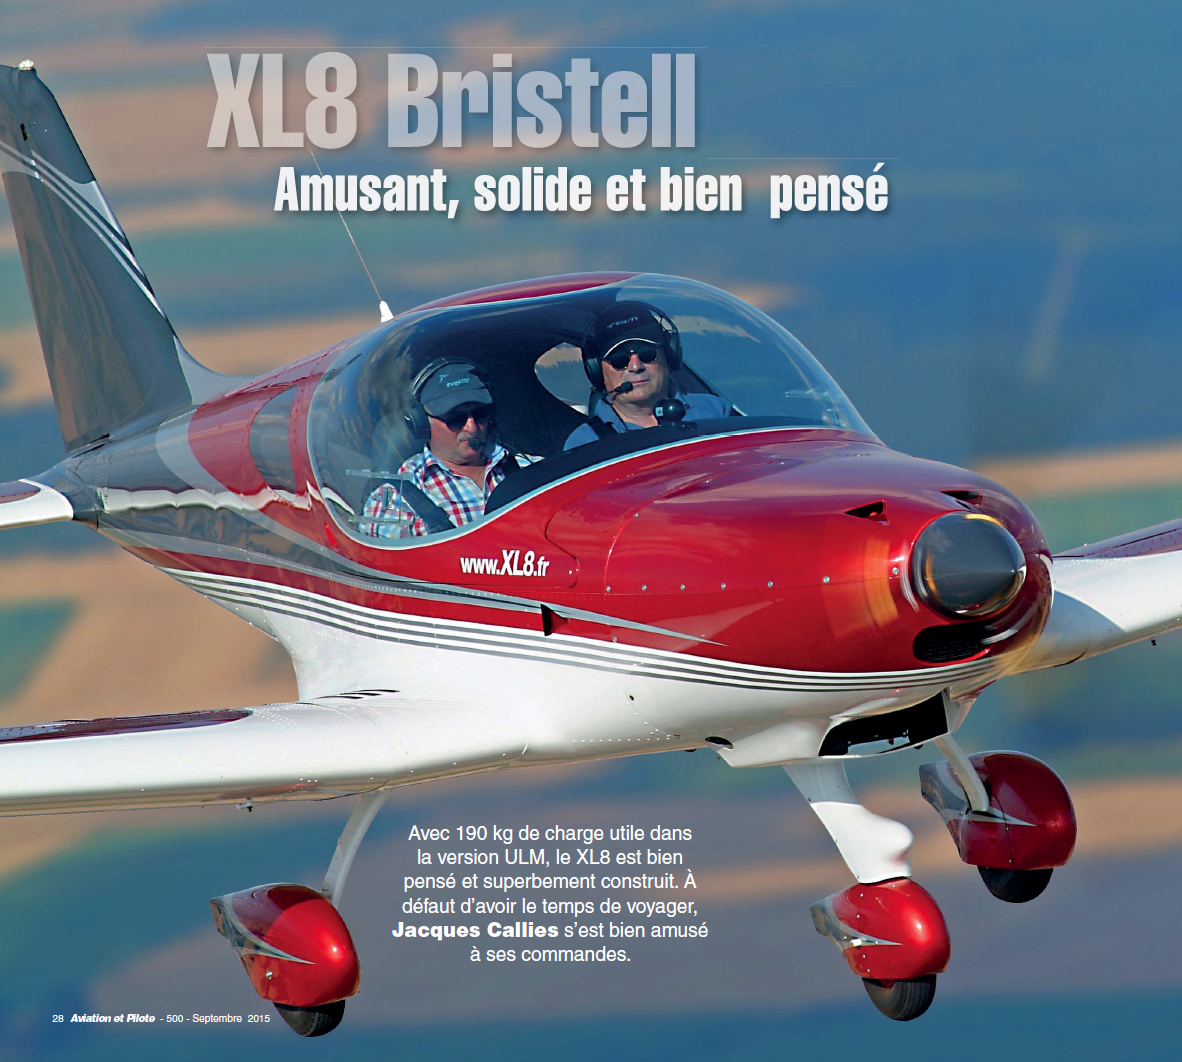 Un article dans Aviation et Pilote sur XL8